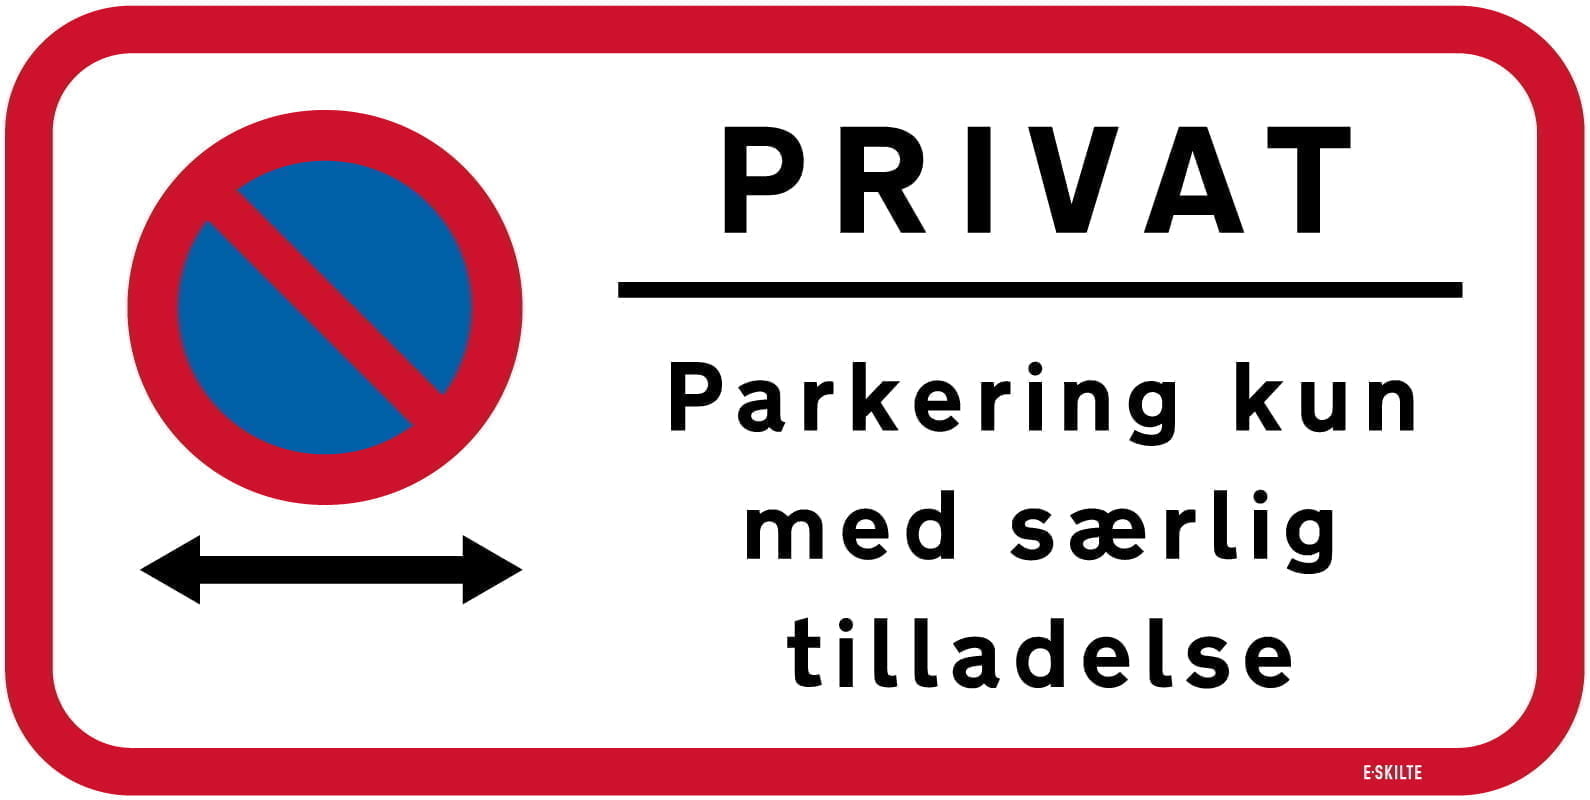 Privat Parkering kun med særlig tilladelse skilt